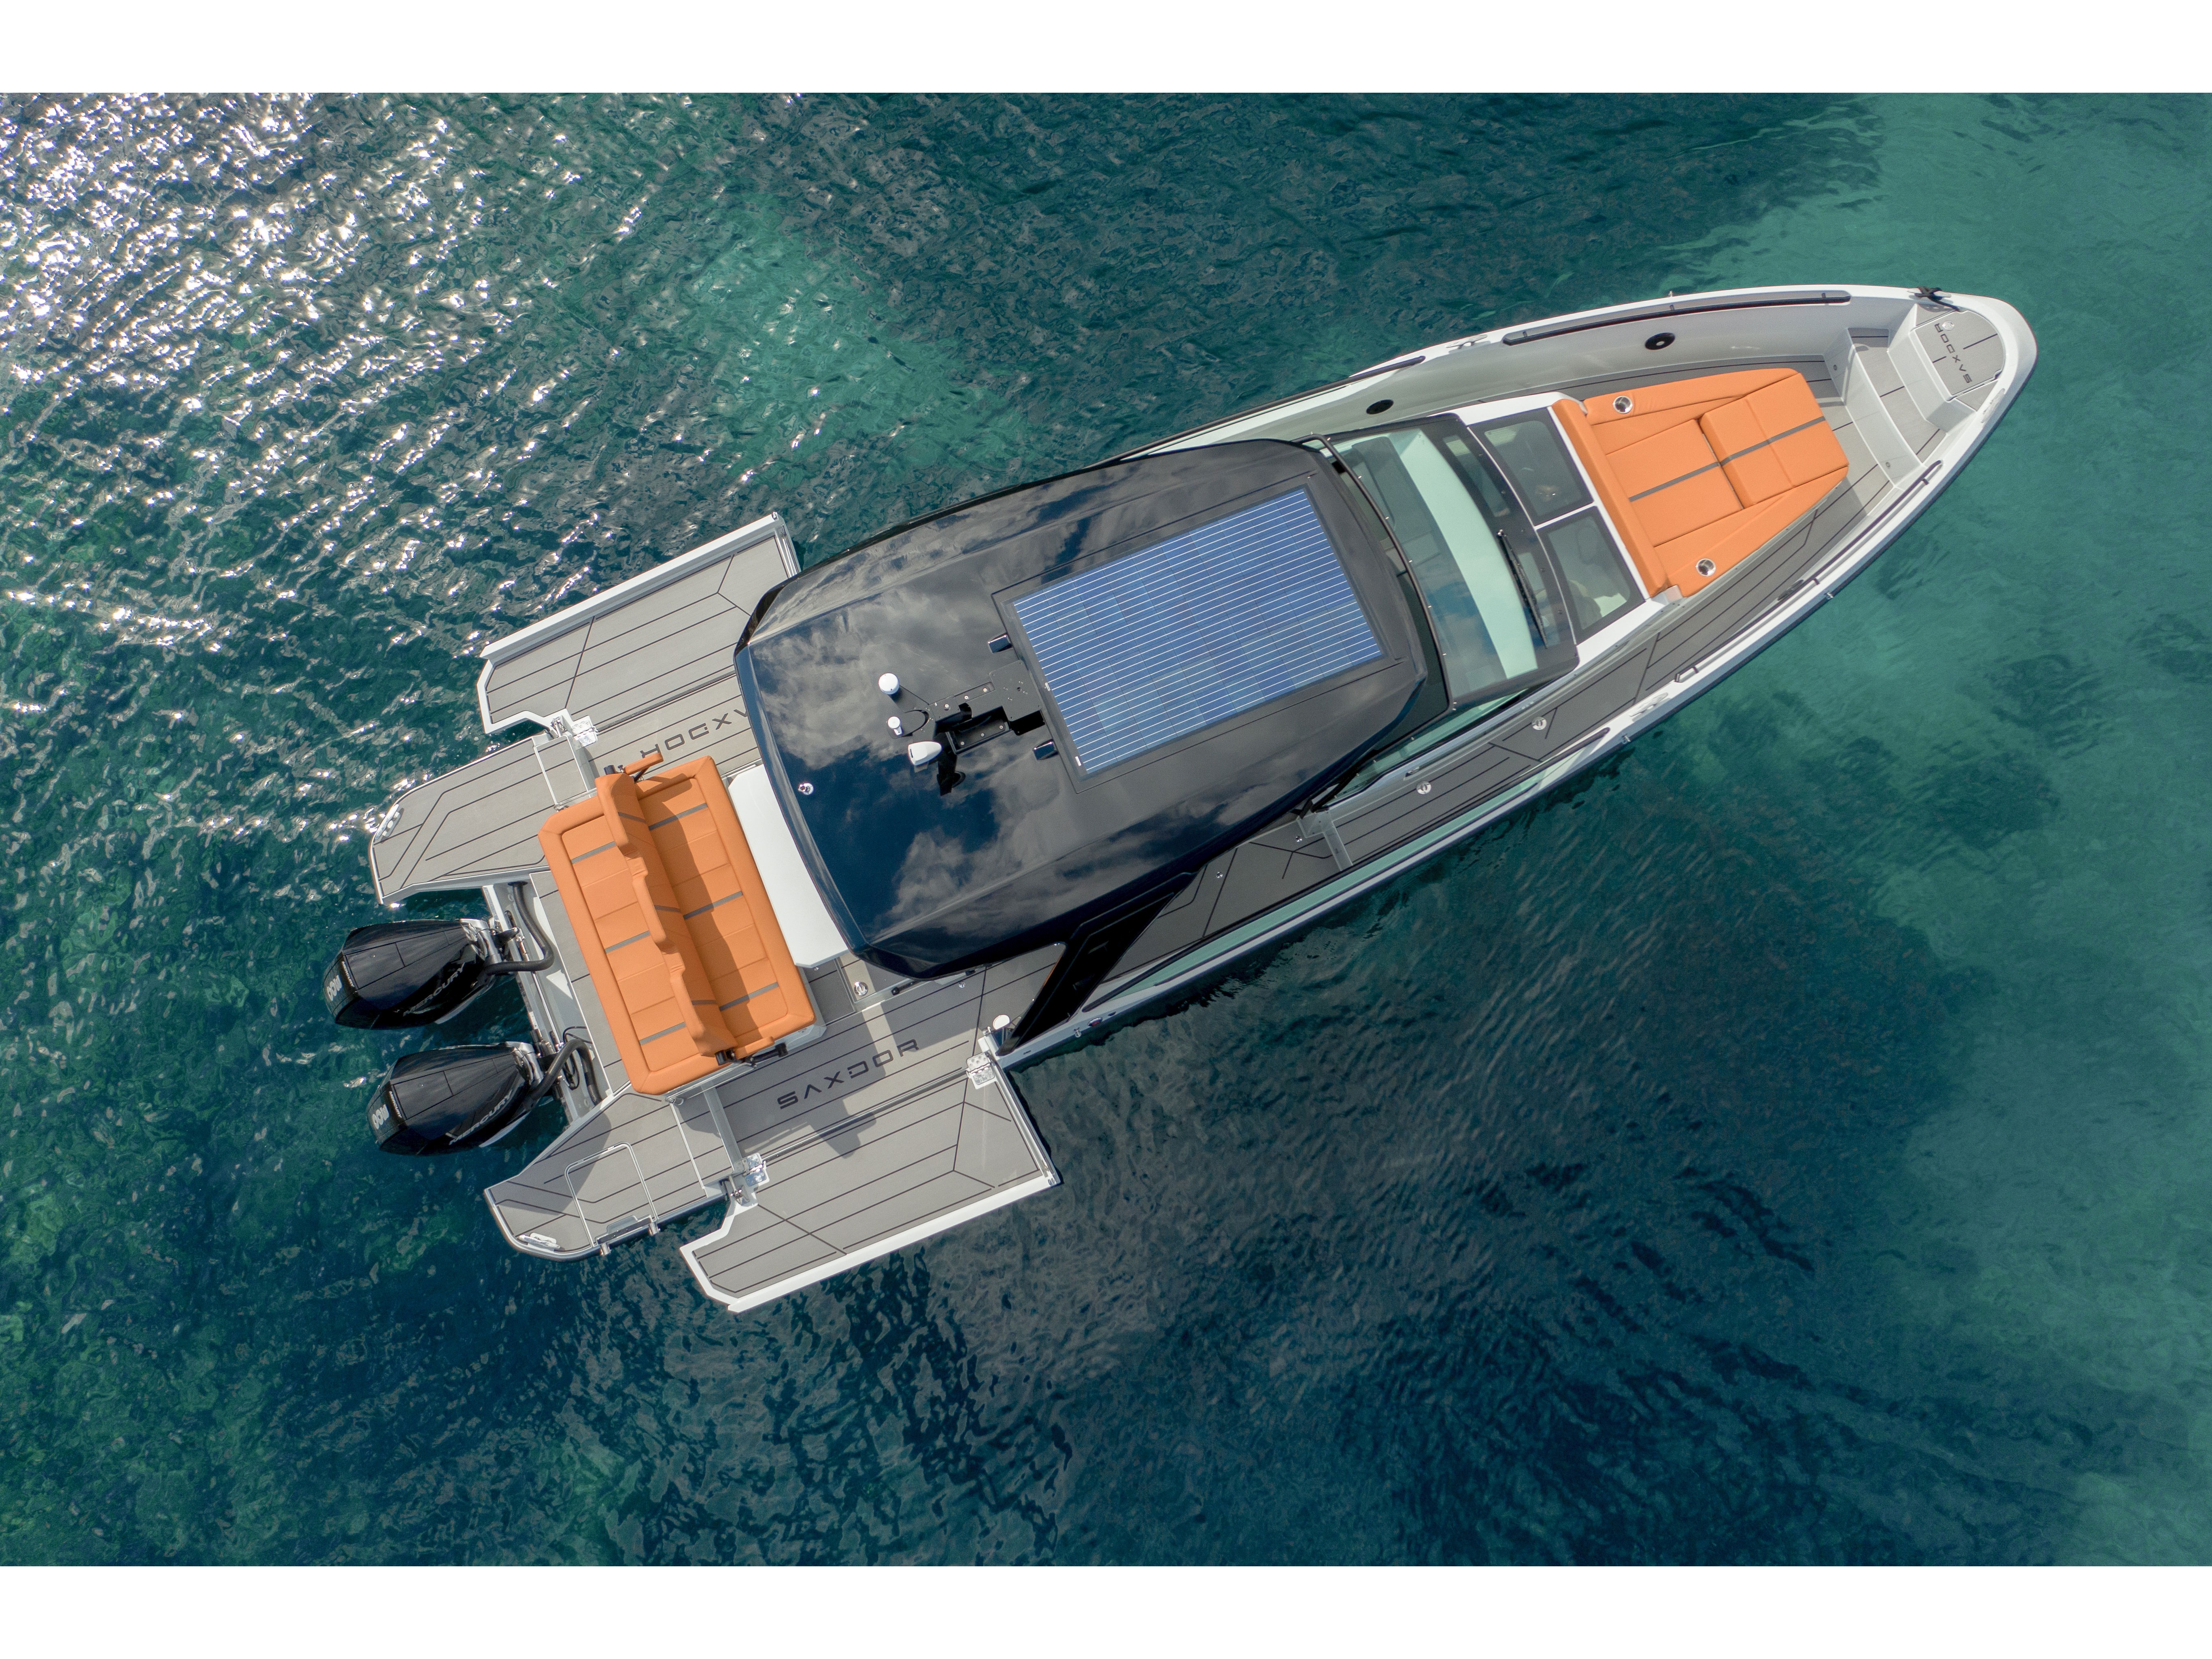 Saxdor 320 GTO - Motorboat rental worldwide & Boat hire in Greece Cyclades Islands Paros Paros Paros 1